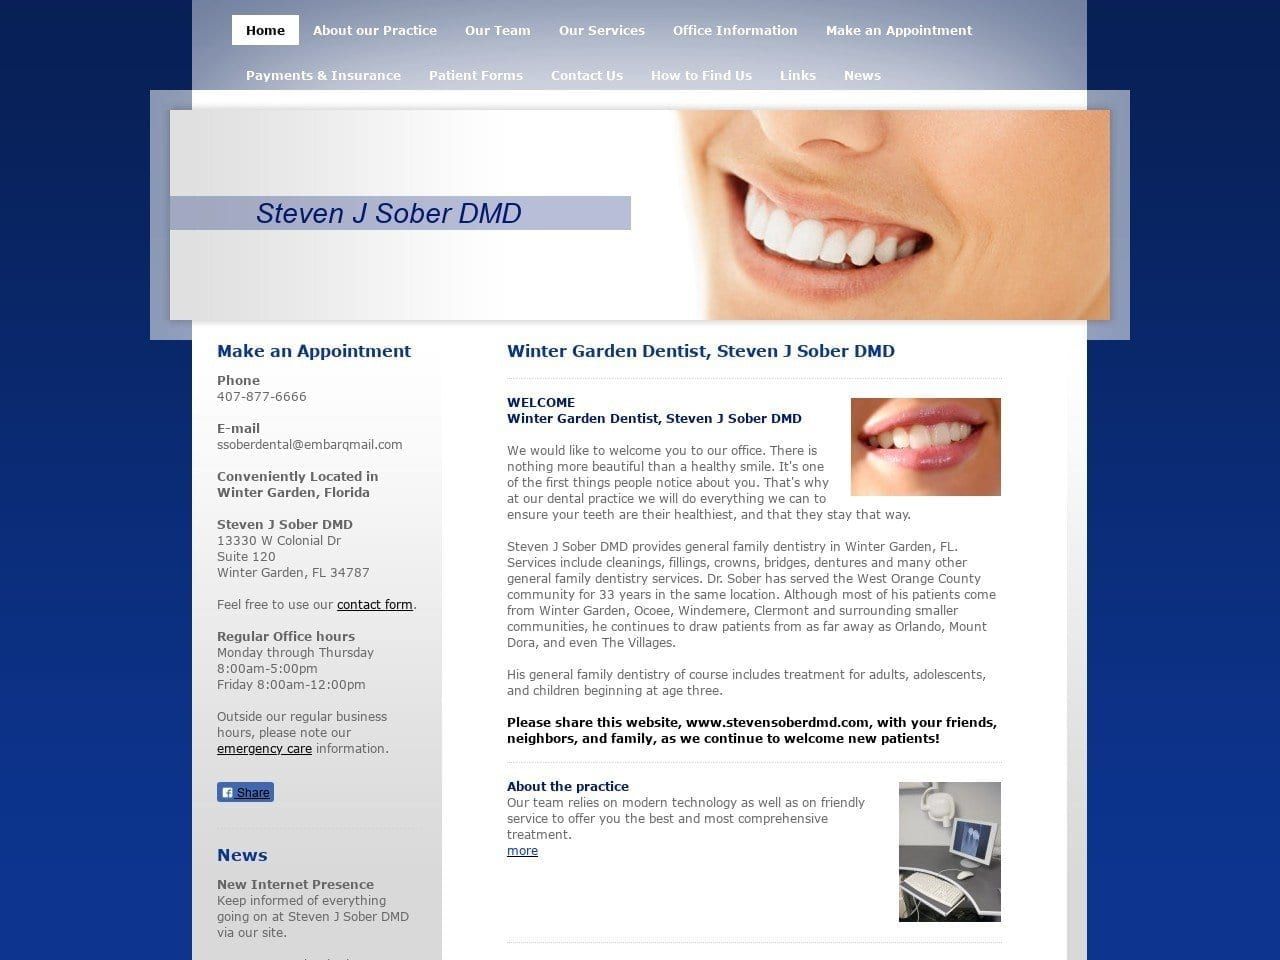 Sober Steven J DMD Website Screenshot from stevensoberdmd.com